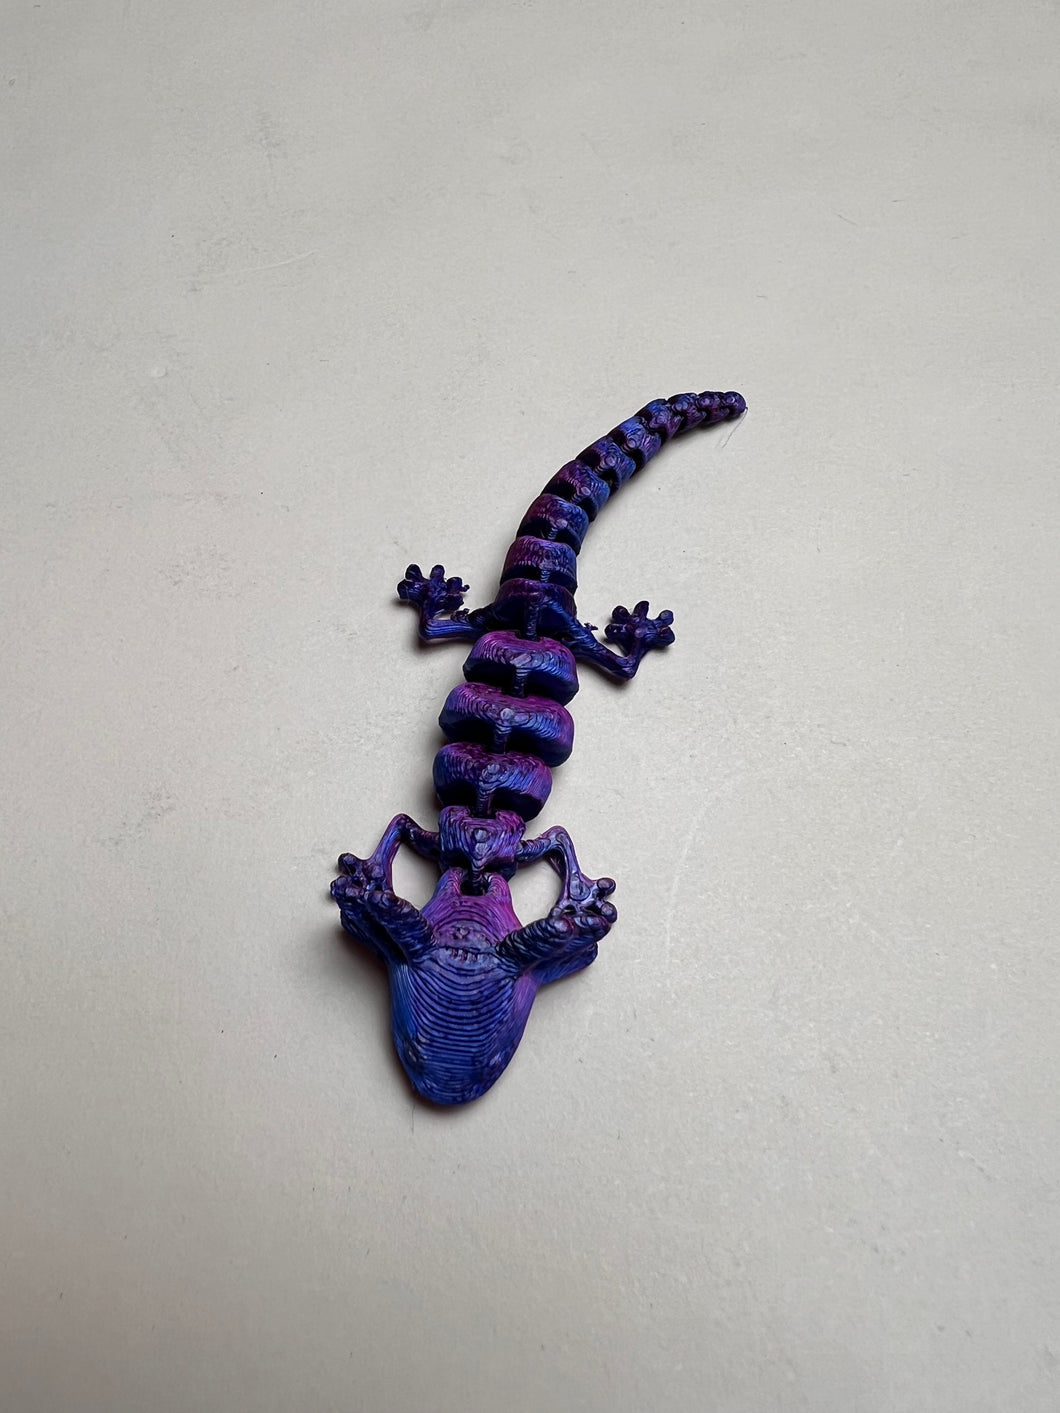 Mini 3D printed axolotl 3.25”